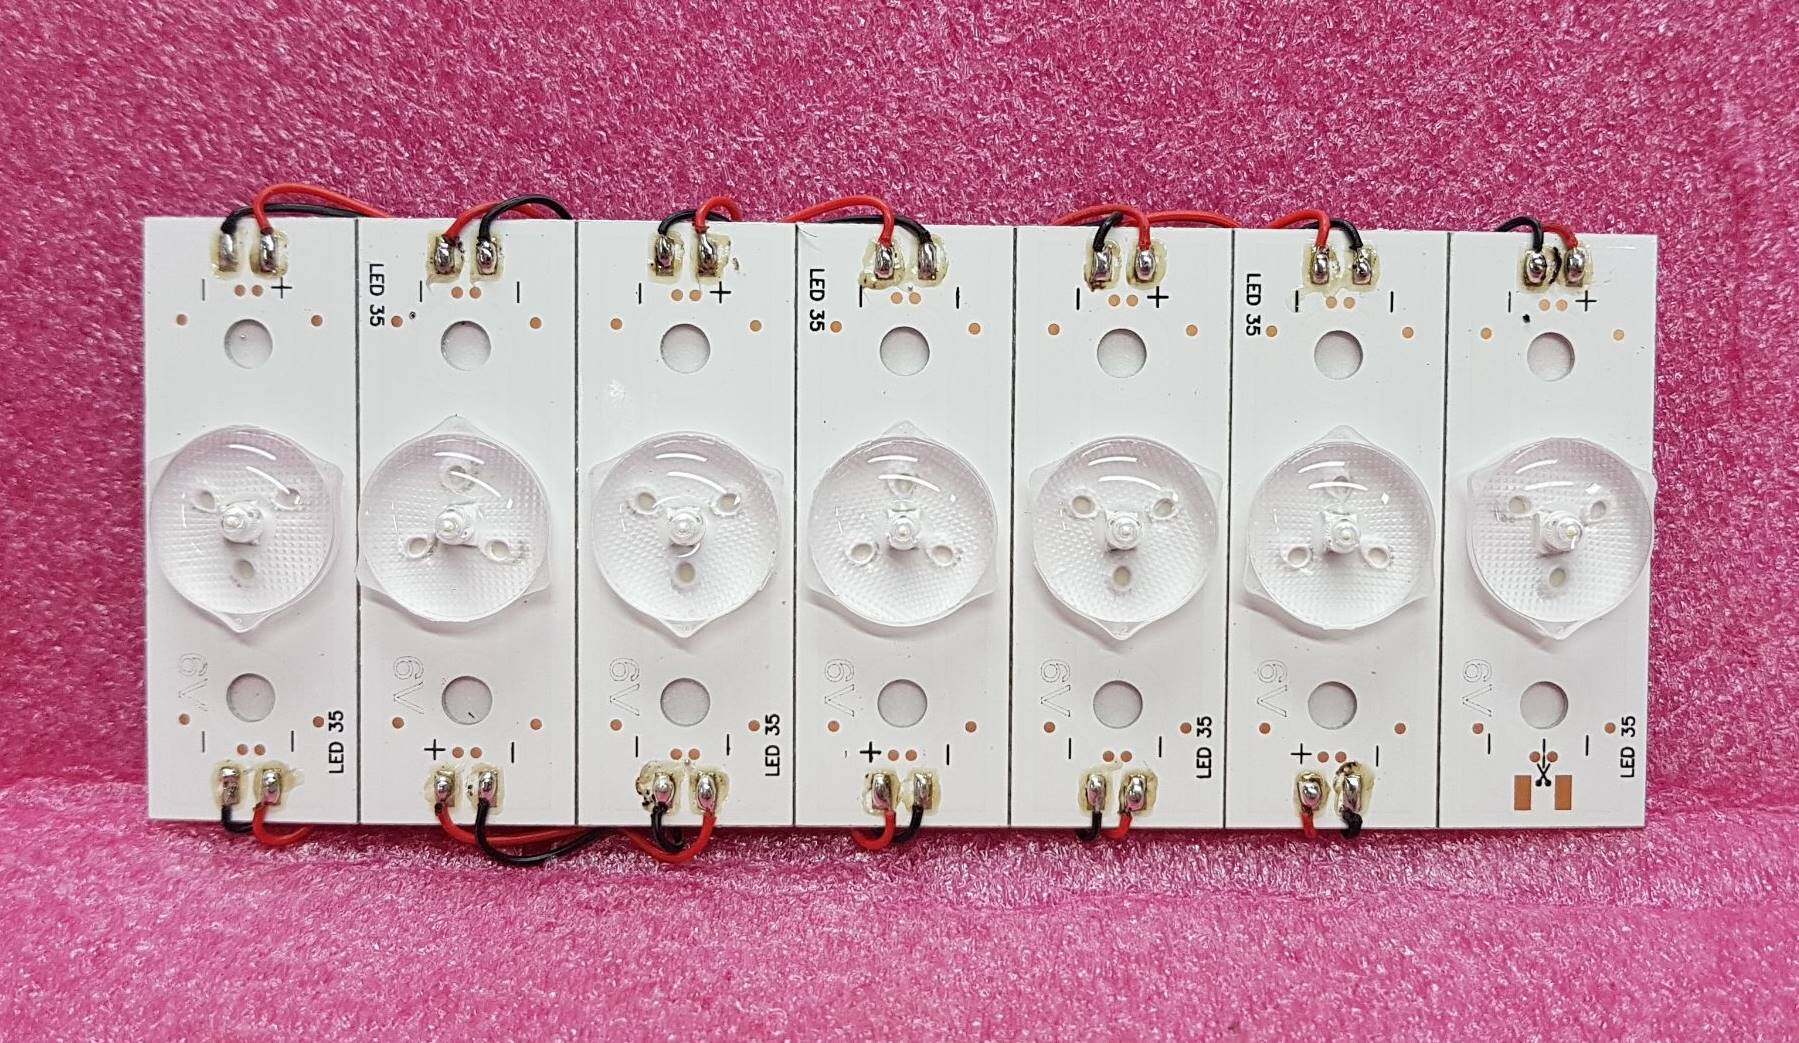 5 ชุด มี LED 35 ดวง หลอดไฟ LED BACKLIGHT DIY 6V 2W แบบกลม (หลอดแบล็คไลท์) ใช้ ตัดแปะ ดัดแปลง ใส่ได้หลายยี่ห้อ เช่น TCL ,ACONATIC, PHILIPS สินค้าใหม่